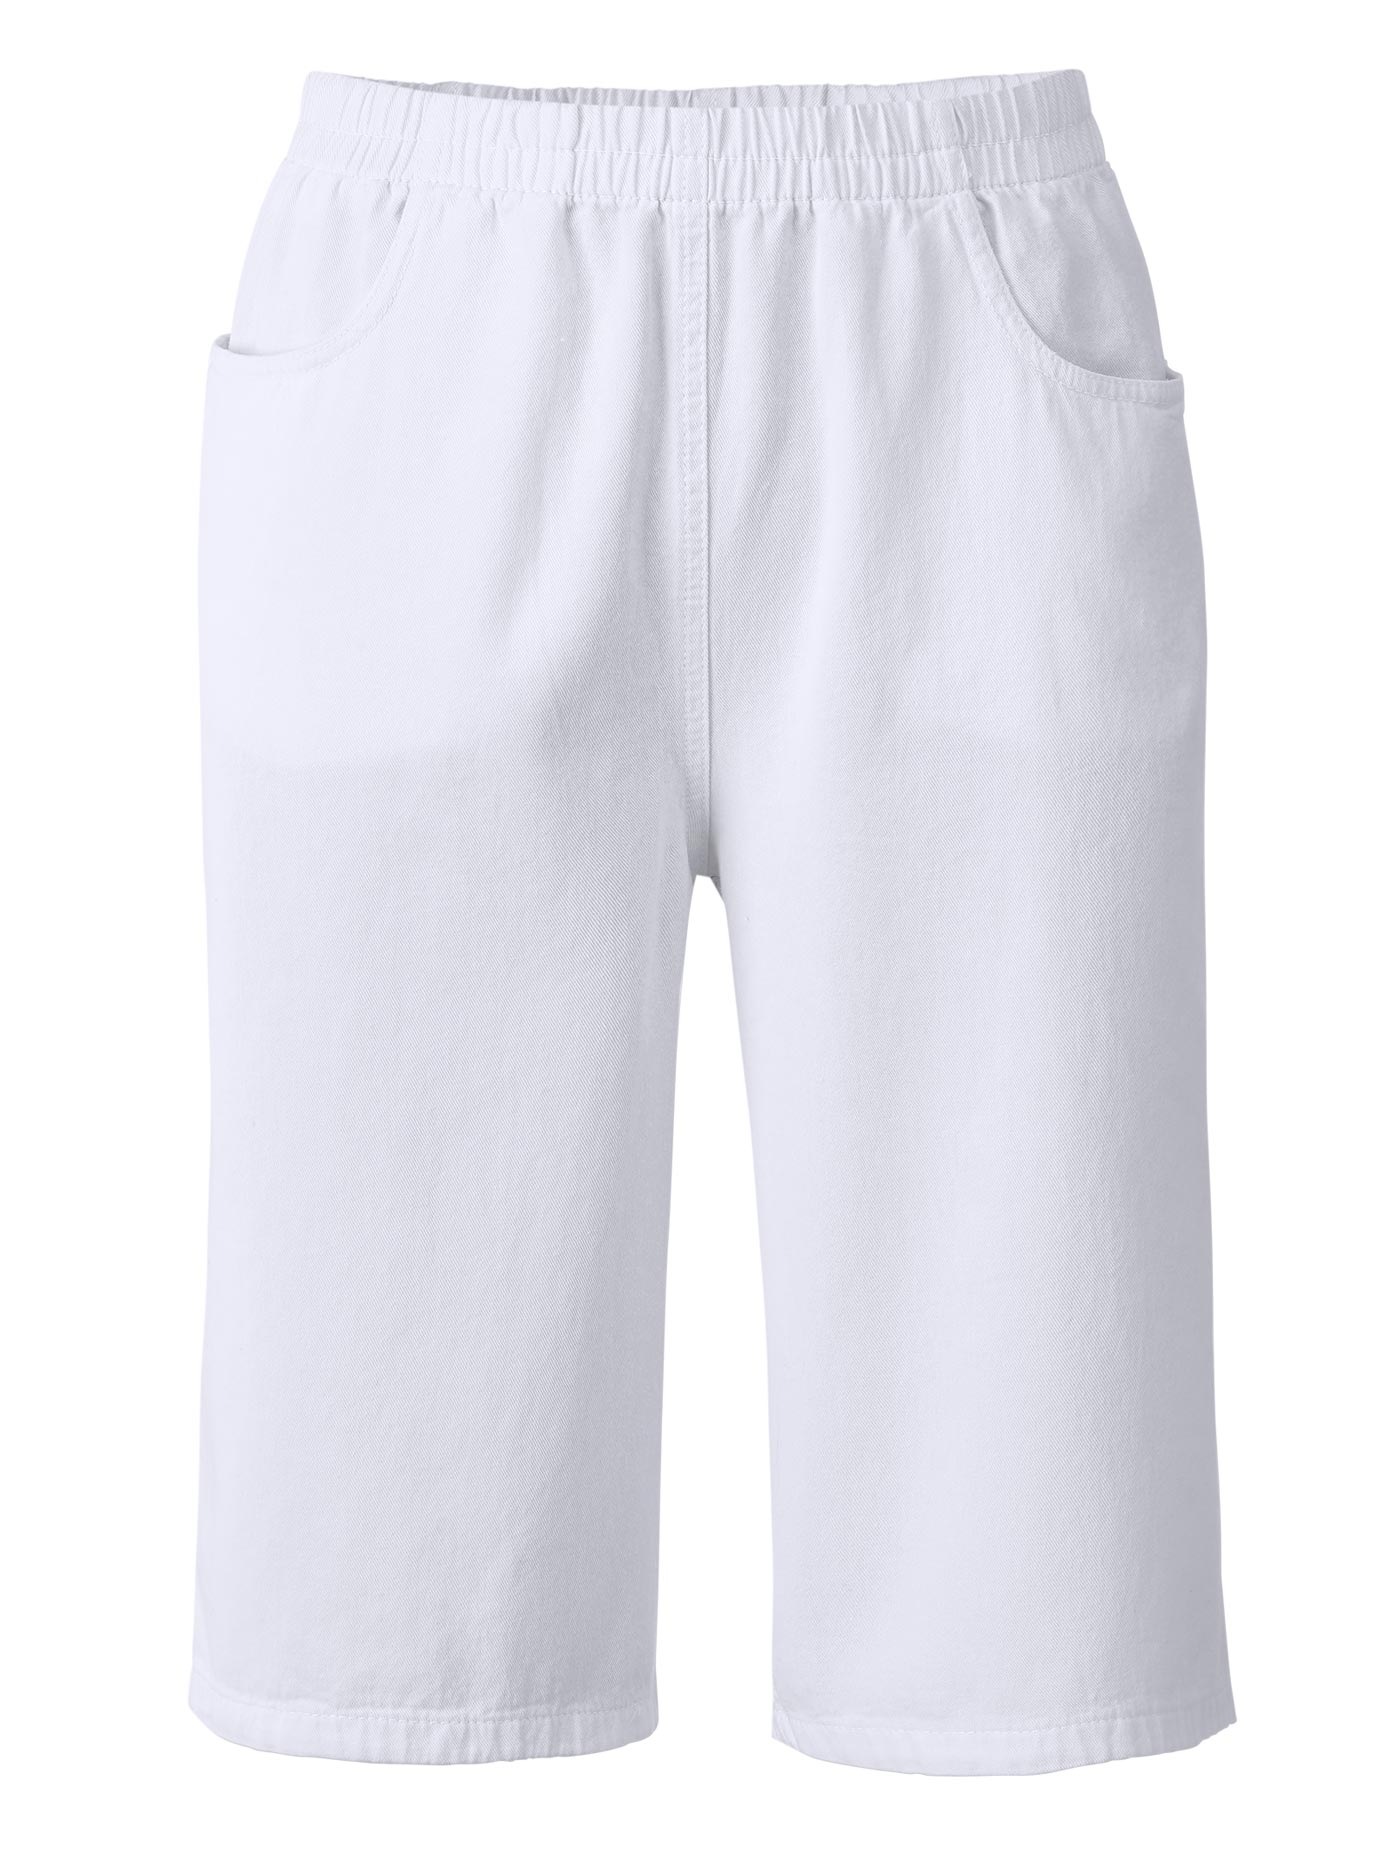 Weiße Shorts für Damen kaufen | BAUR online